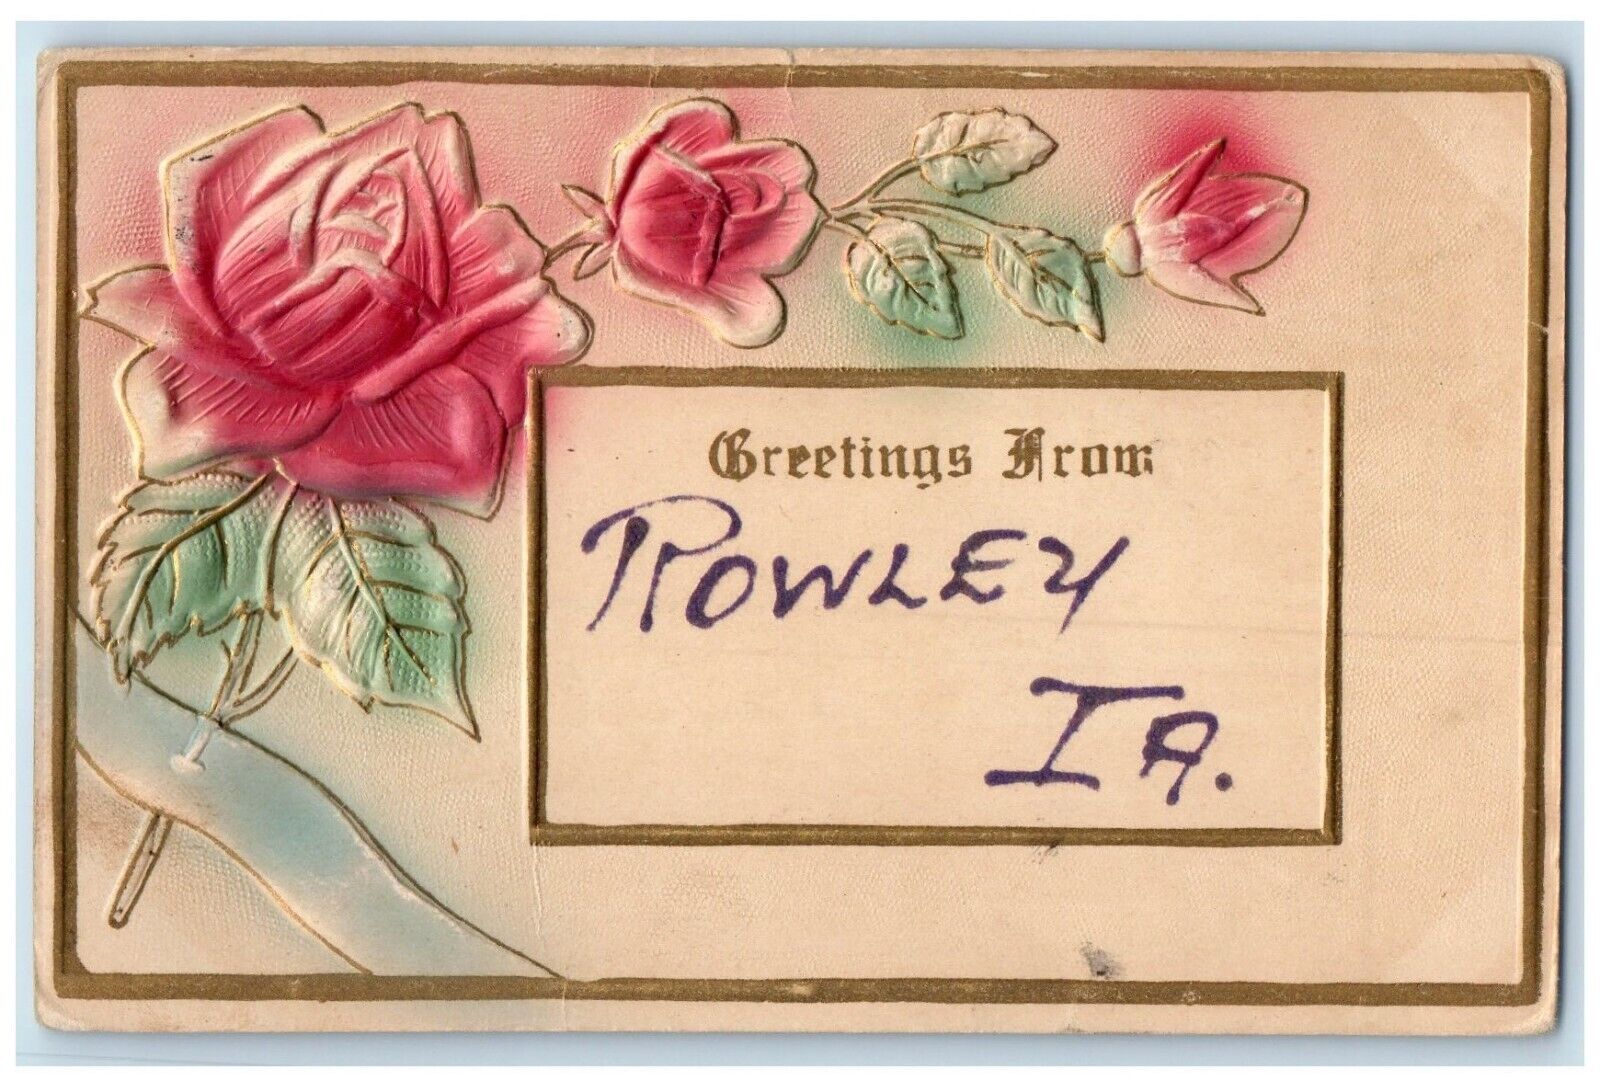 c1910 Greetings From Airbrush Embossed Flowers Rowley Iowa IA Vintage Postcard